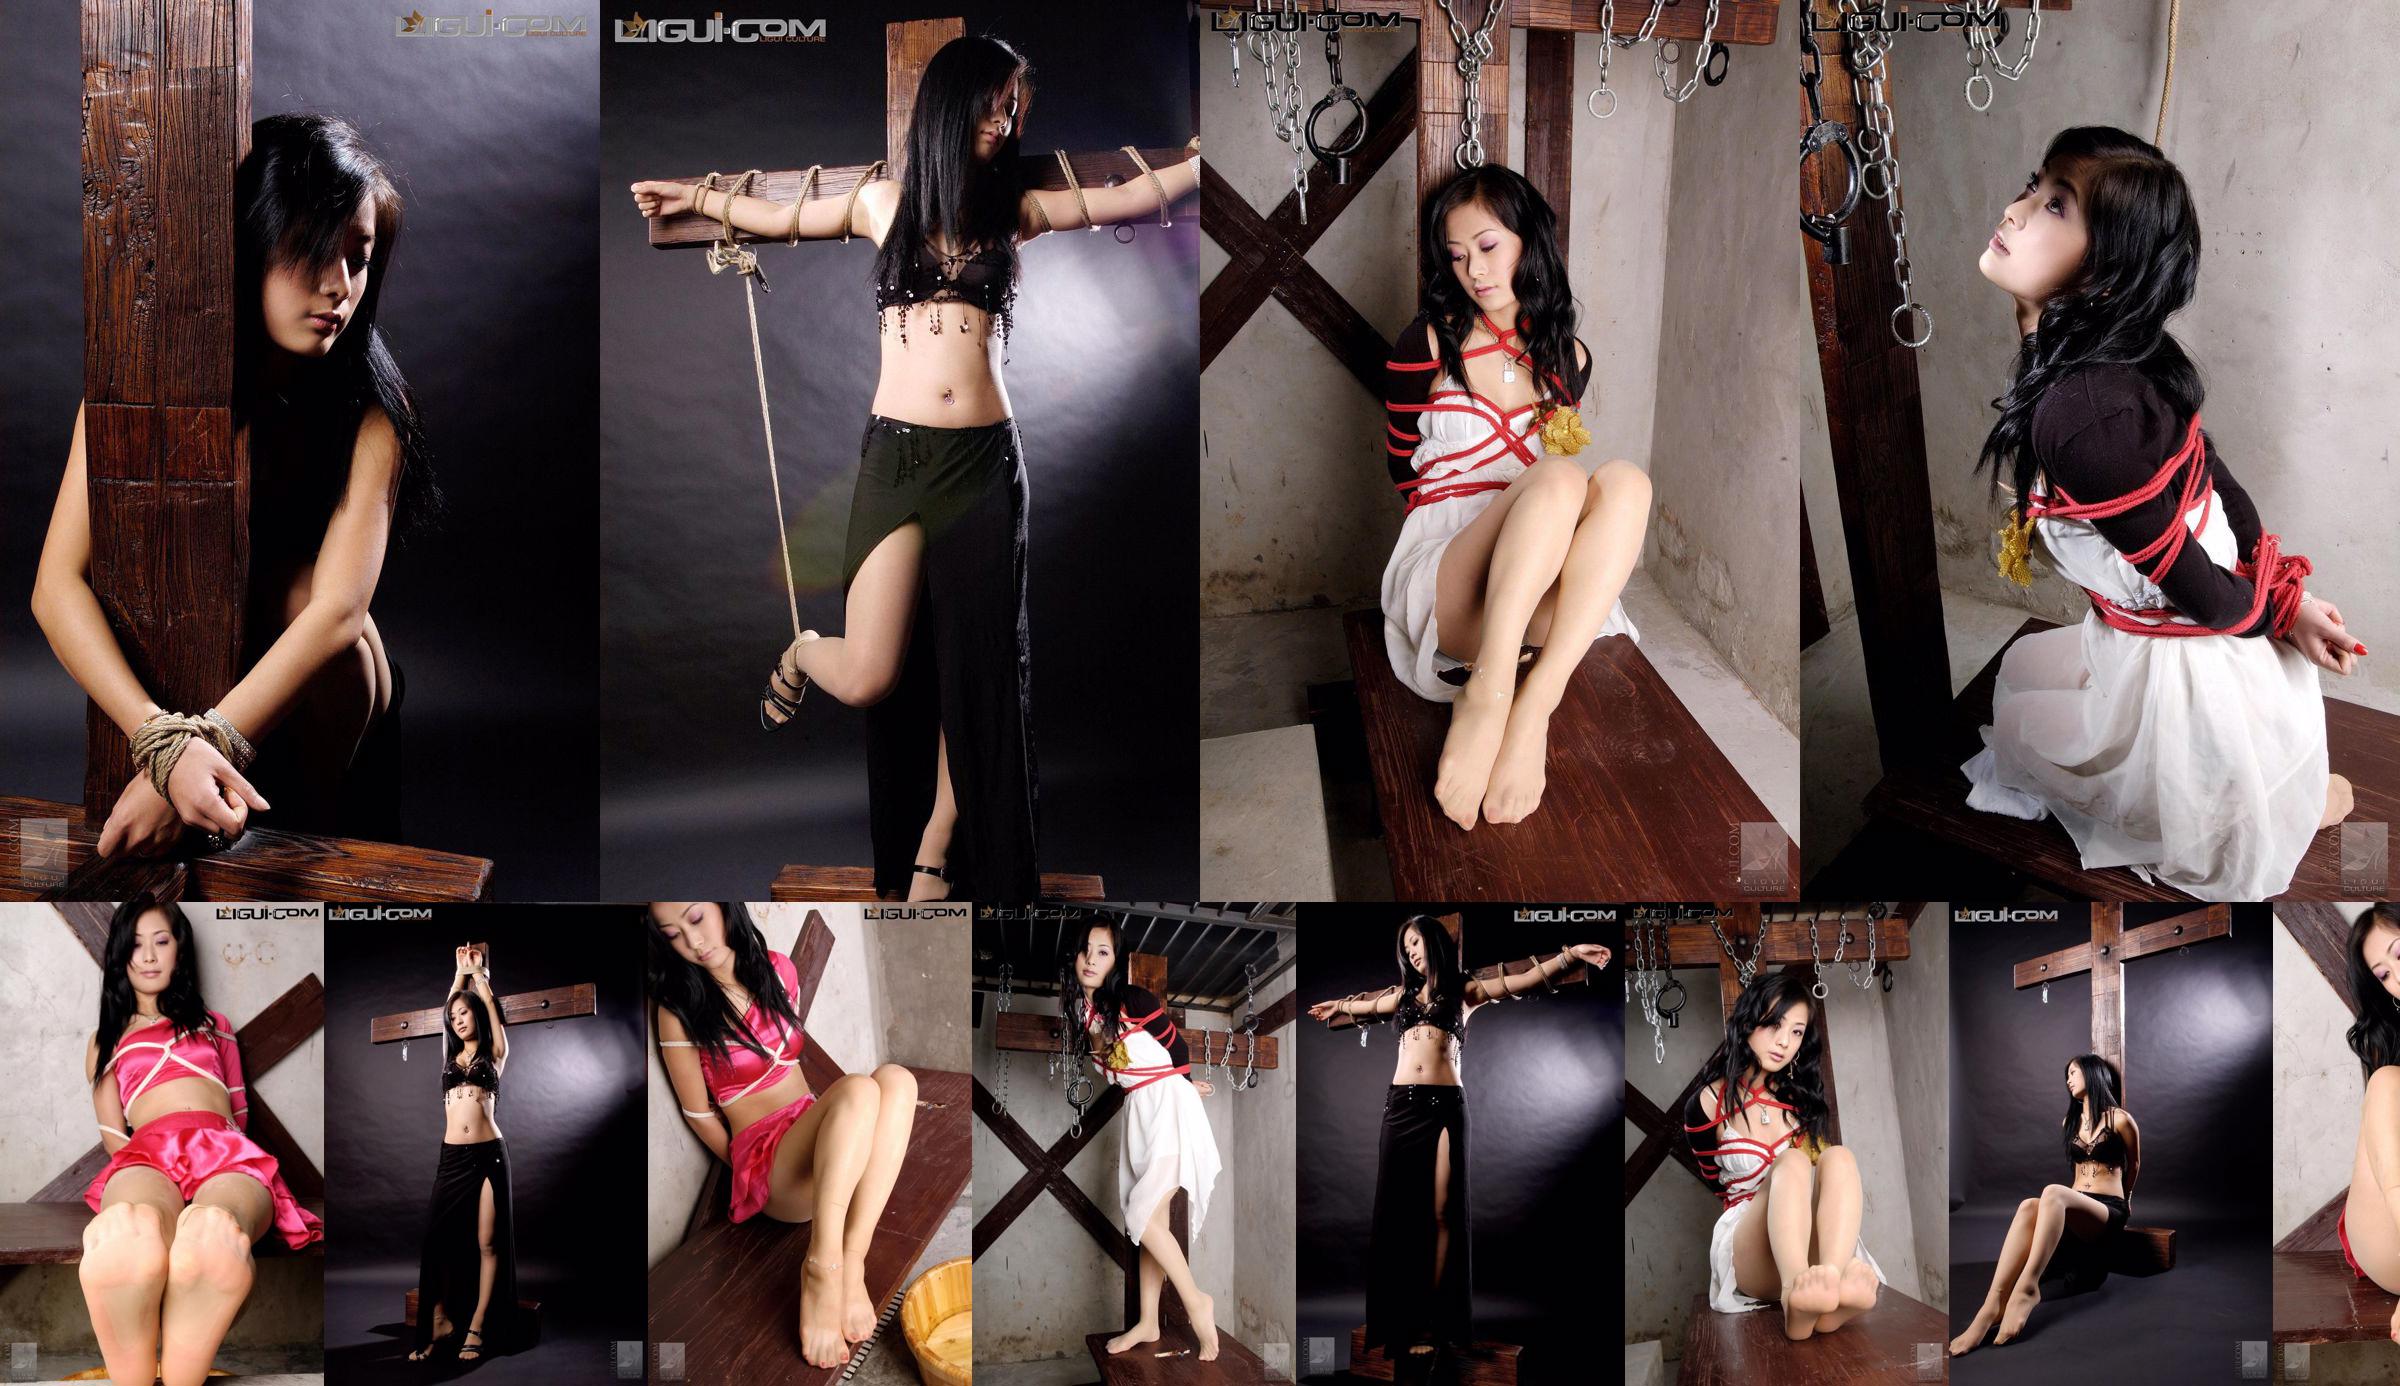 [Yuzumi Mitsuka LiGui] Zdjęcie modelki Saya „Związana czerwoną sznurem” Piękne nogi i nefrytowe stopy Zdjęcie No.924a6a Strona 3